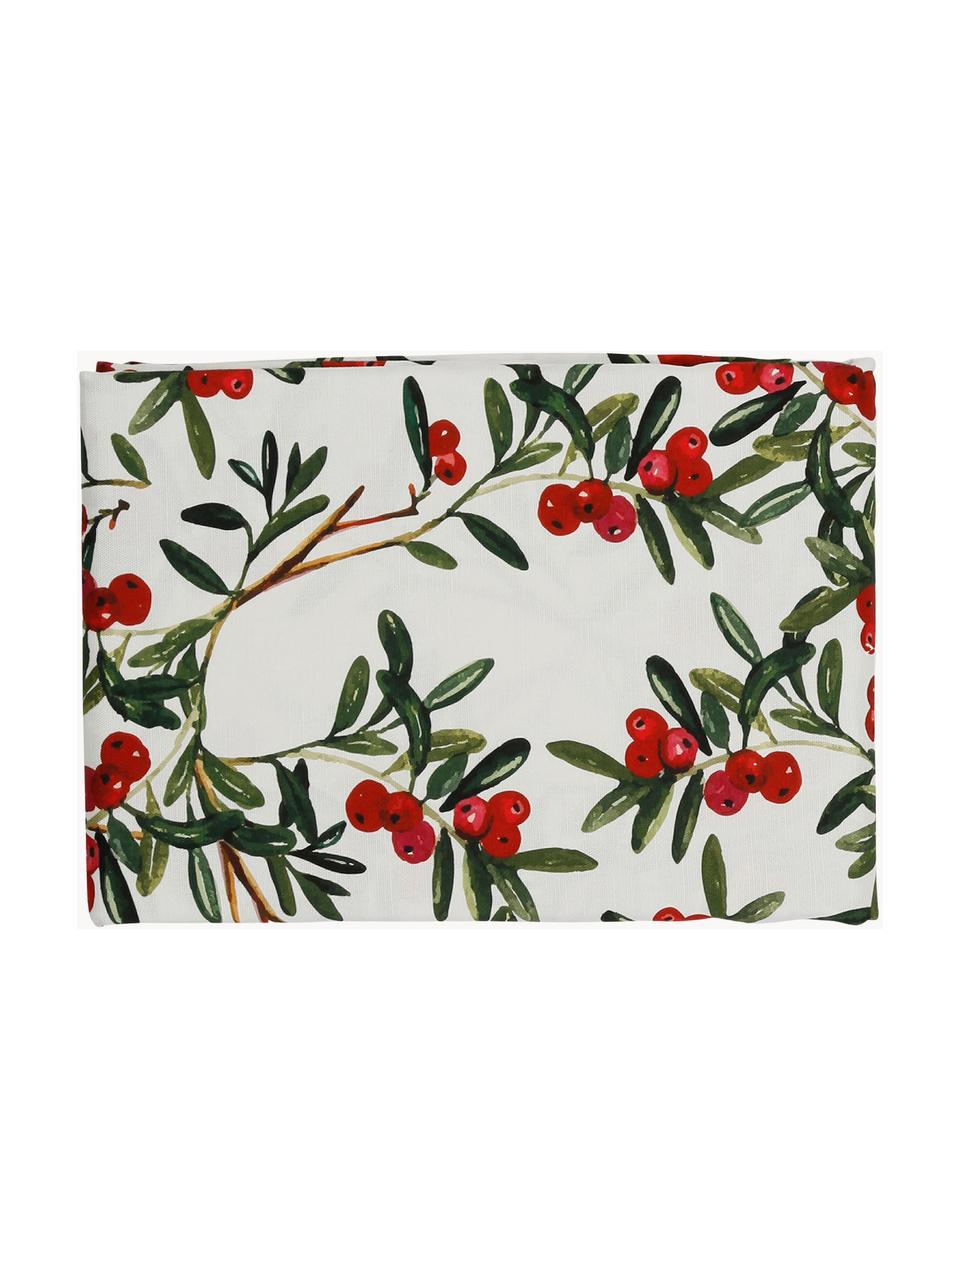 Baumwoll-Tischdecke Airelle mit weihnachtlichen Motiven, Baumwolle, Weiß, Rot, Grün, 4-6 Personen (L 160 x B 160 cm)